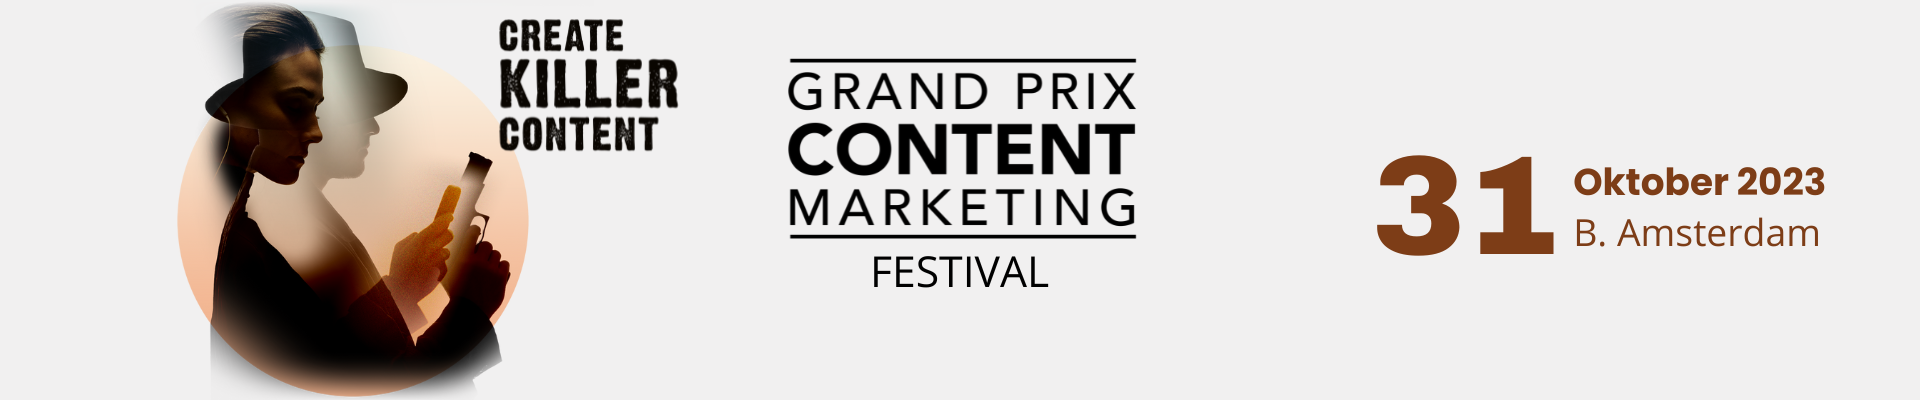 Grand Prix Content Marketing Festival 2023